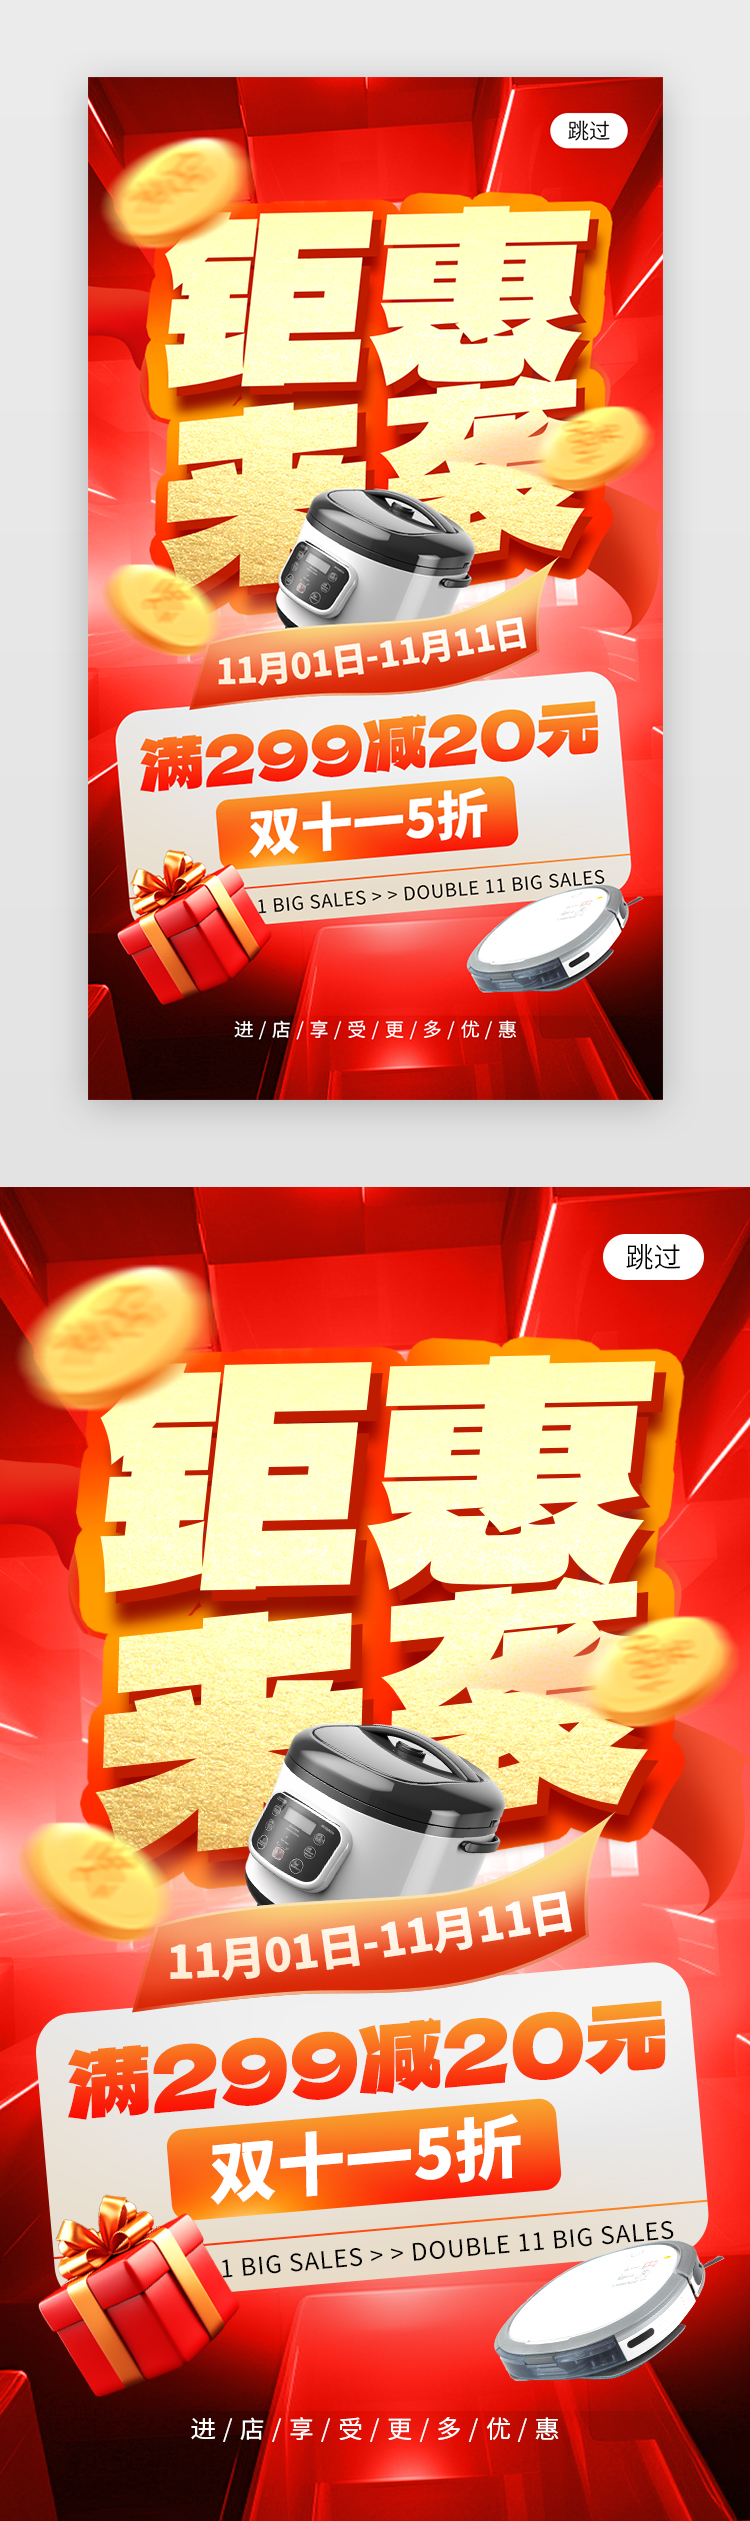 双11钜惠来袭app闪屏创意红色电器促销图片